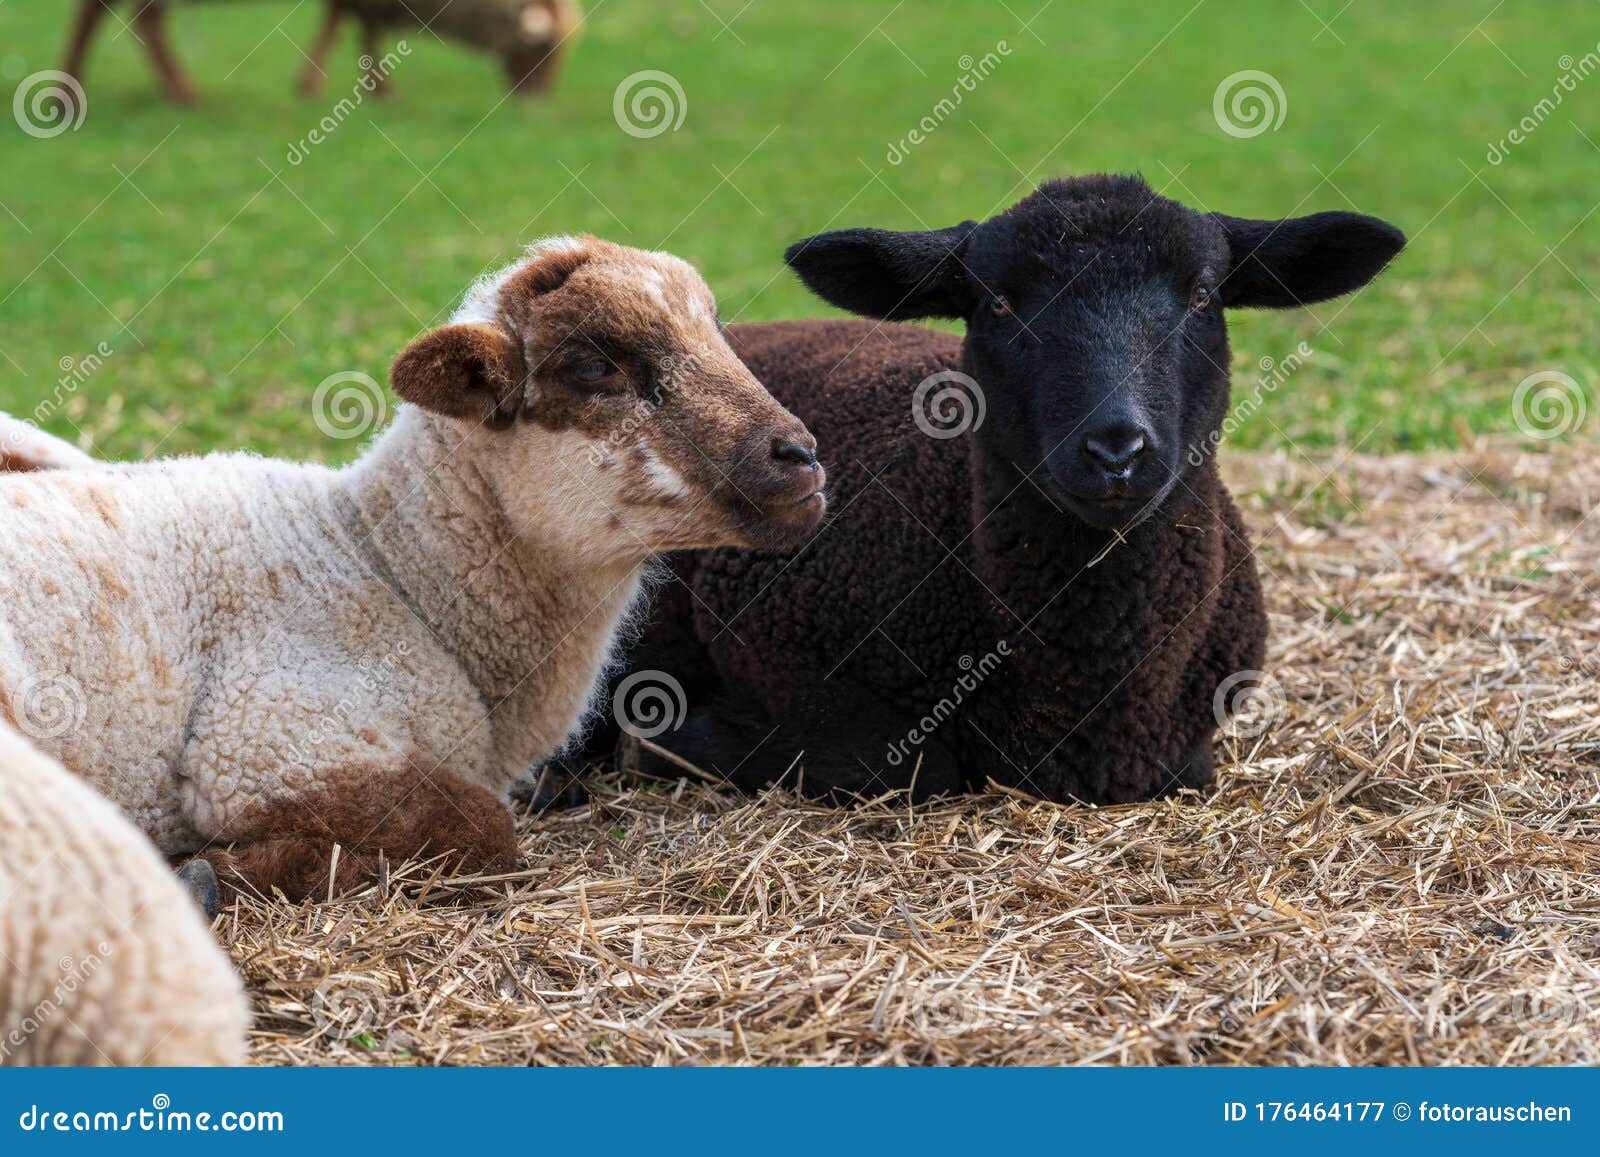 德国草甸草地上可爱的白羊和黑羊画像动物友谊的概念 自由放射库存图片 图片包括有查找 农事